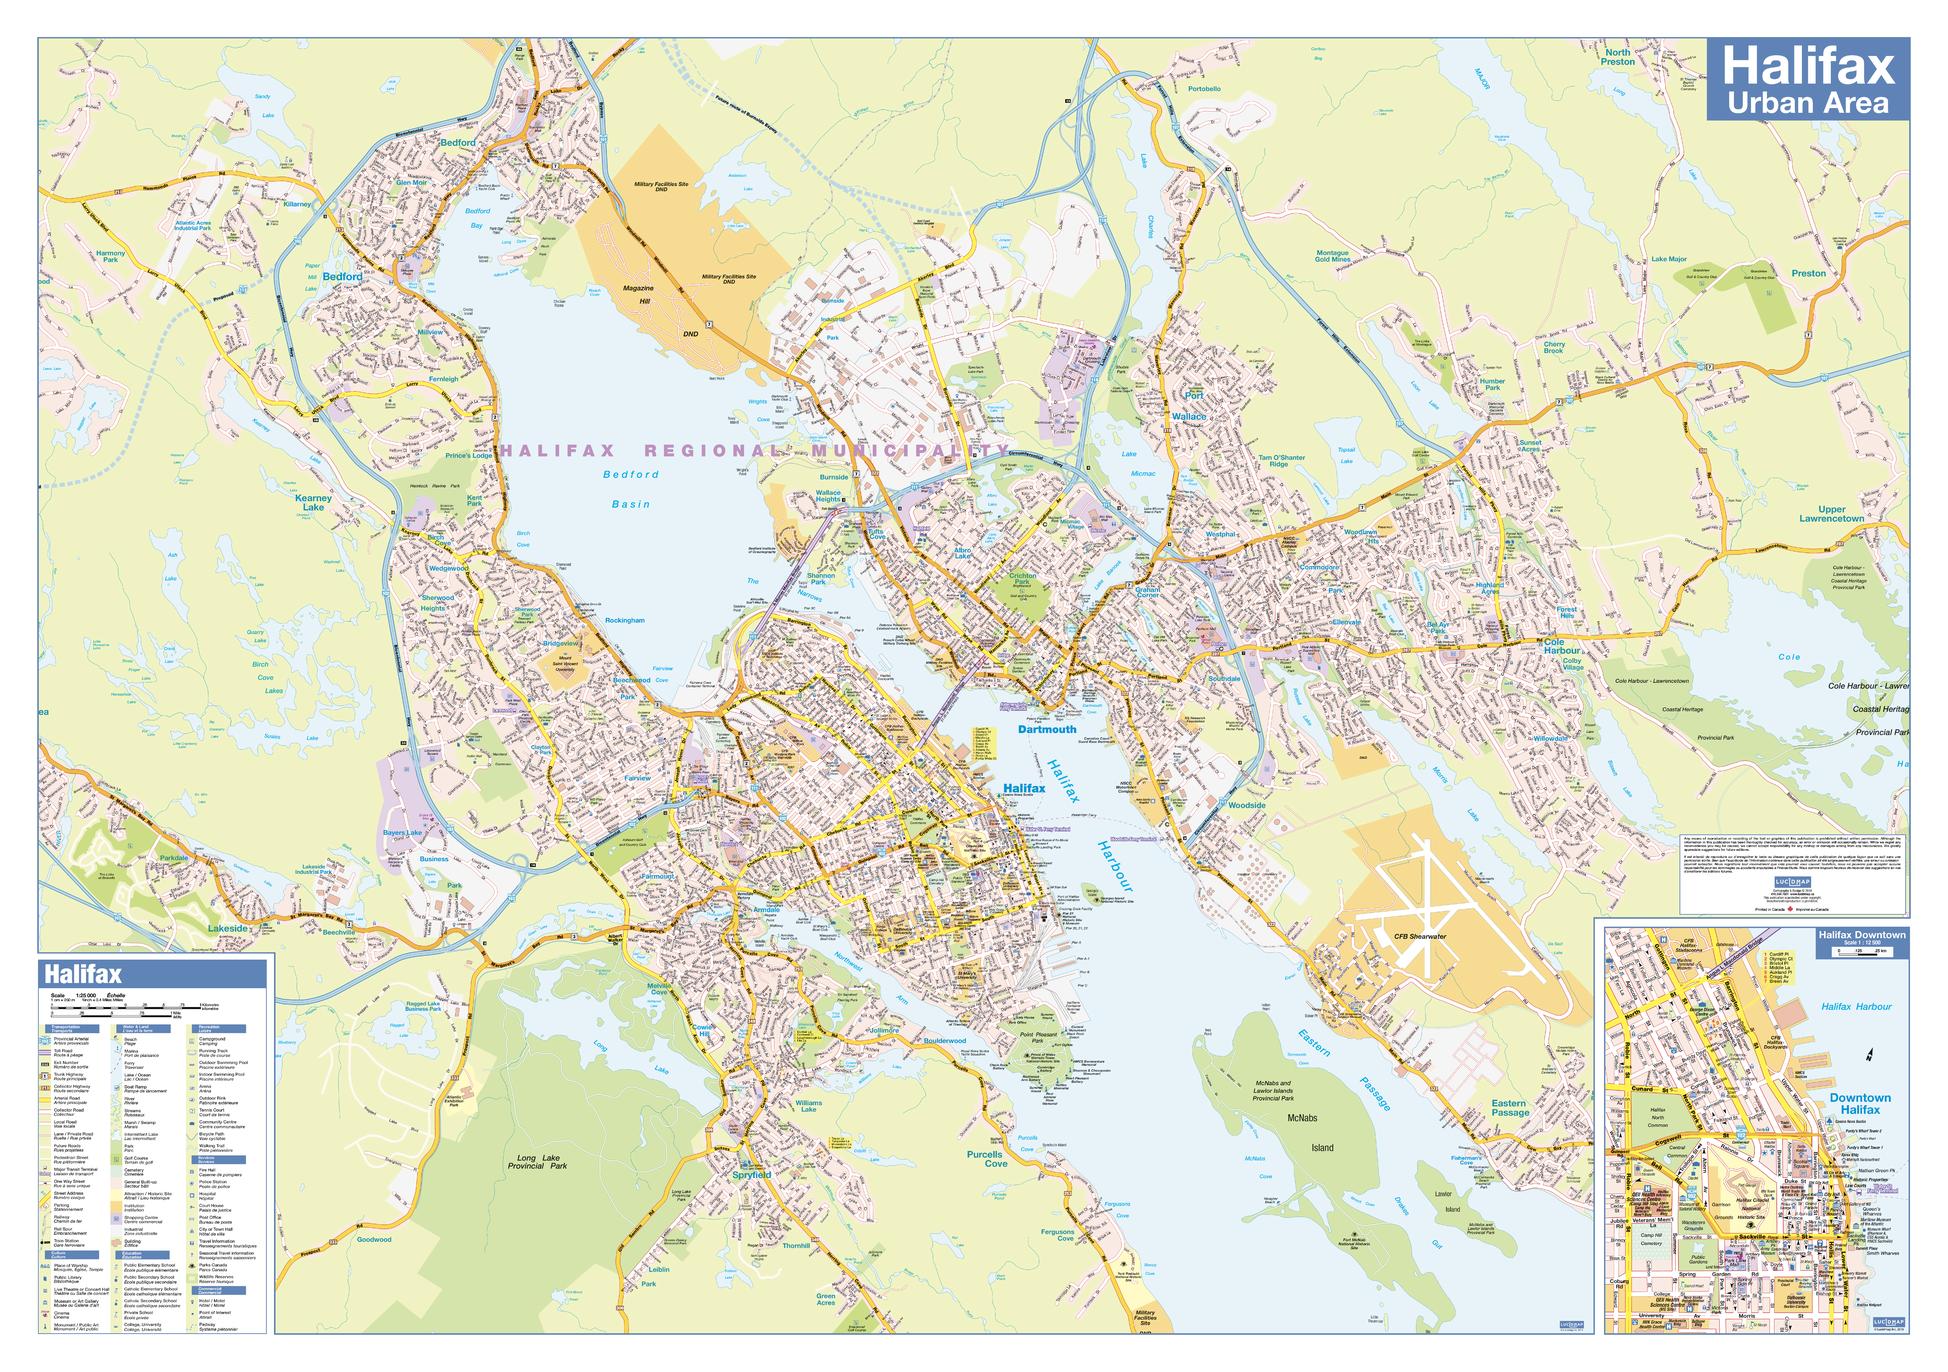 Halifax Urban Wall Map 40" x 28"